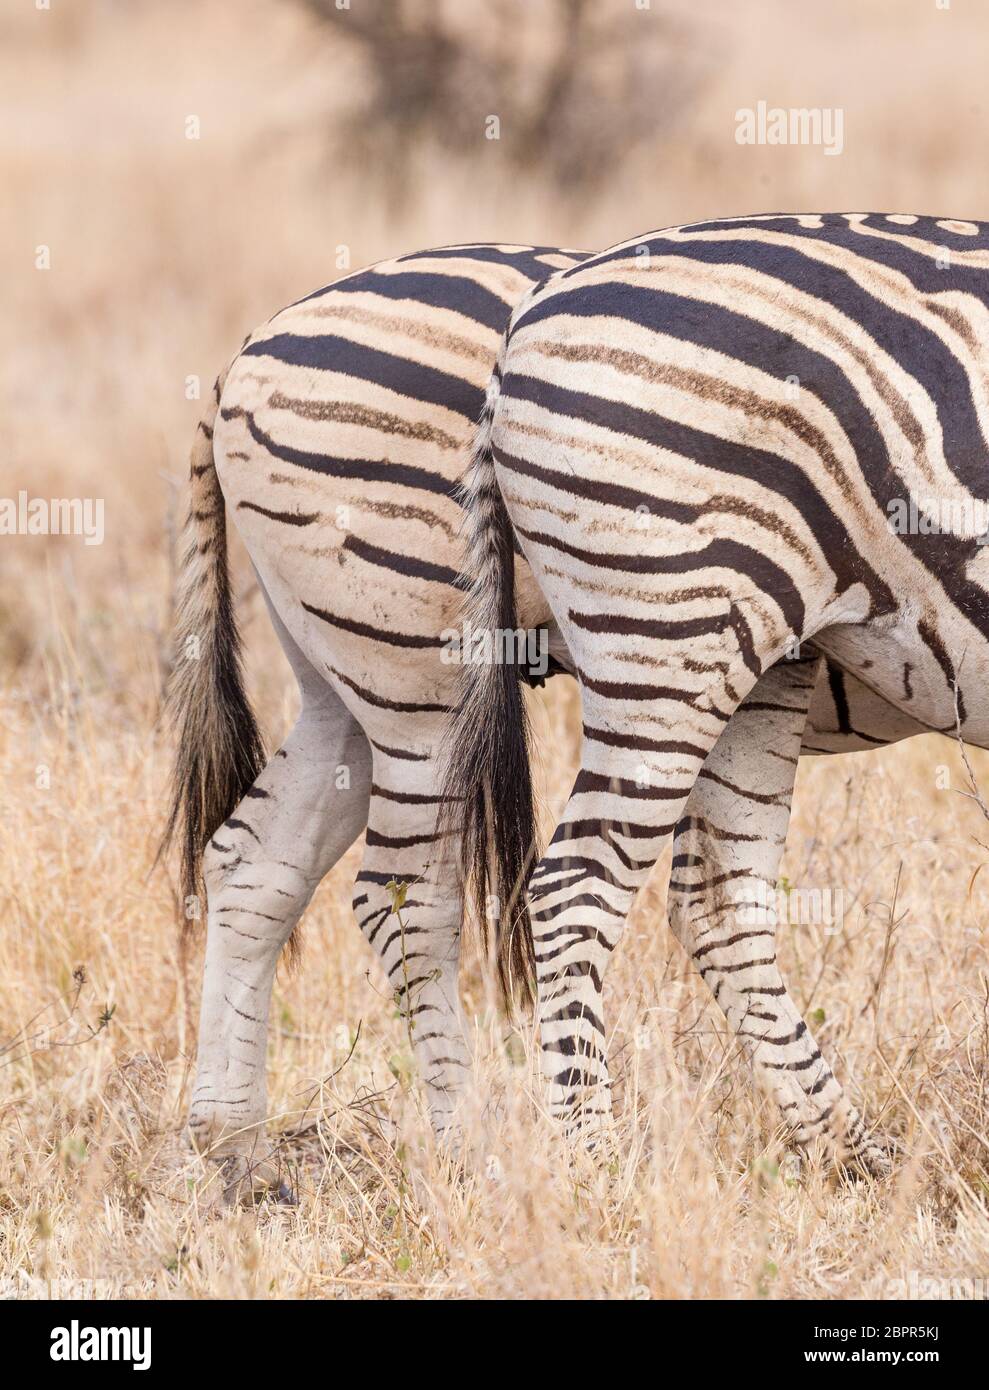 Nahaufnahme des Streifenmusters auf dem Burchell's Zebra, das deutlich den Schattenstreifen Kruger Park Südafrika zeigt Stockfoto